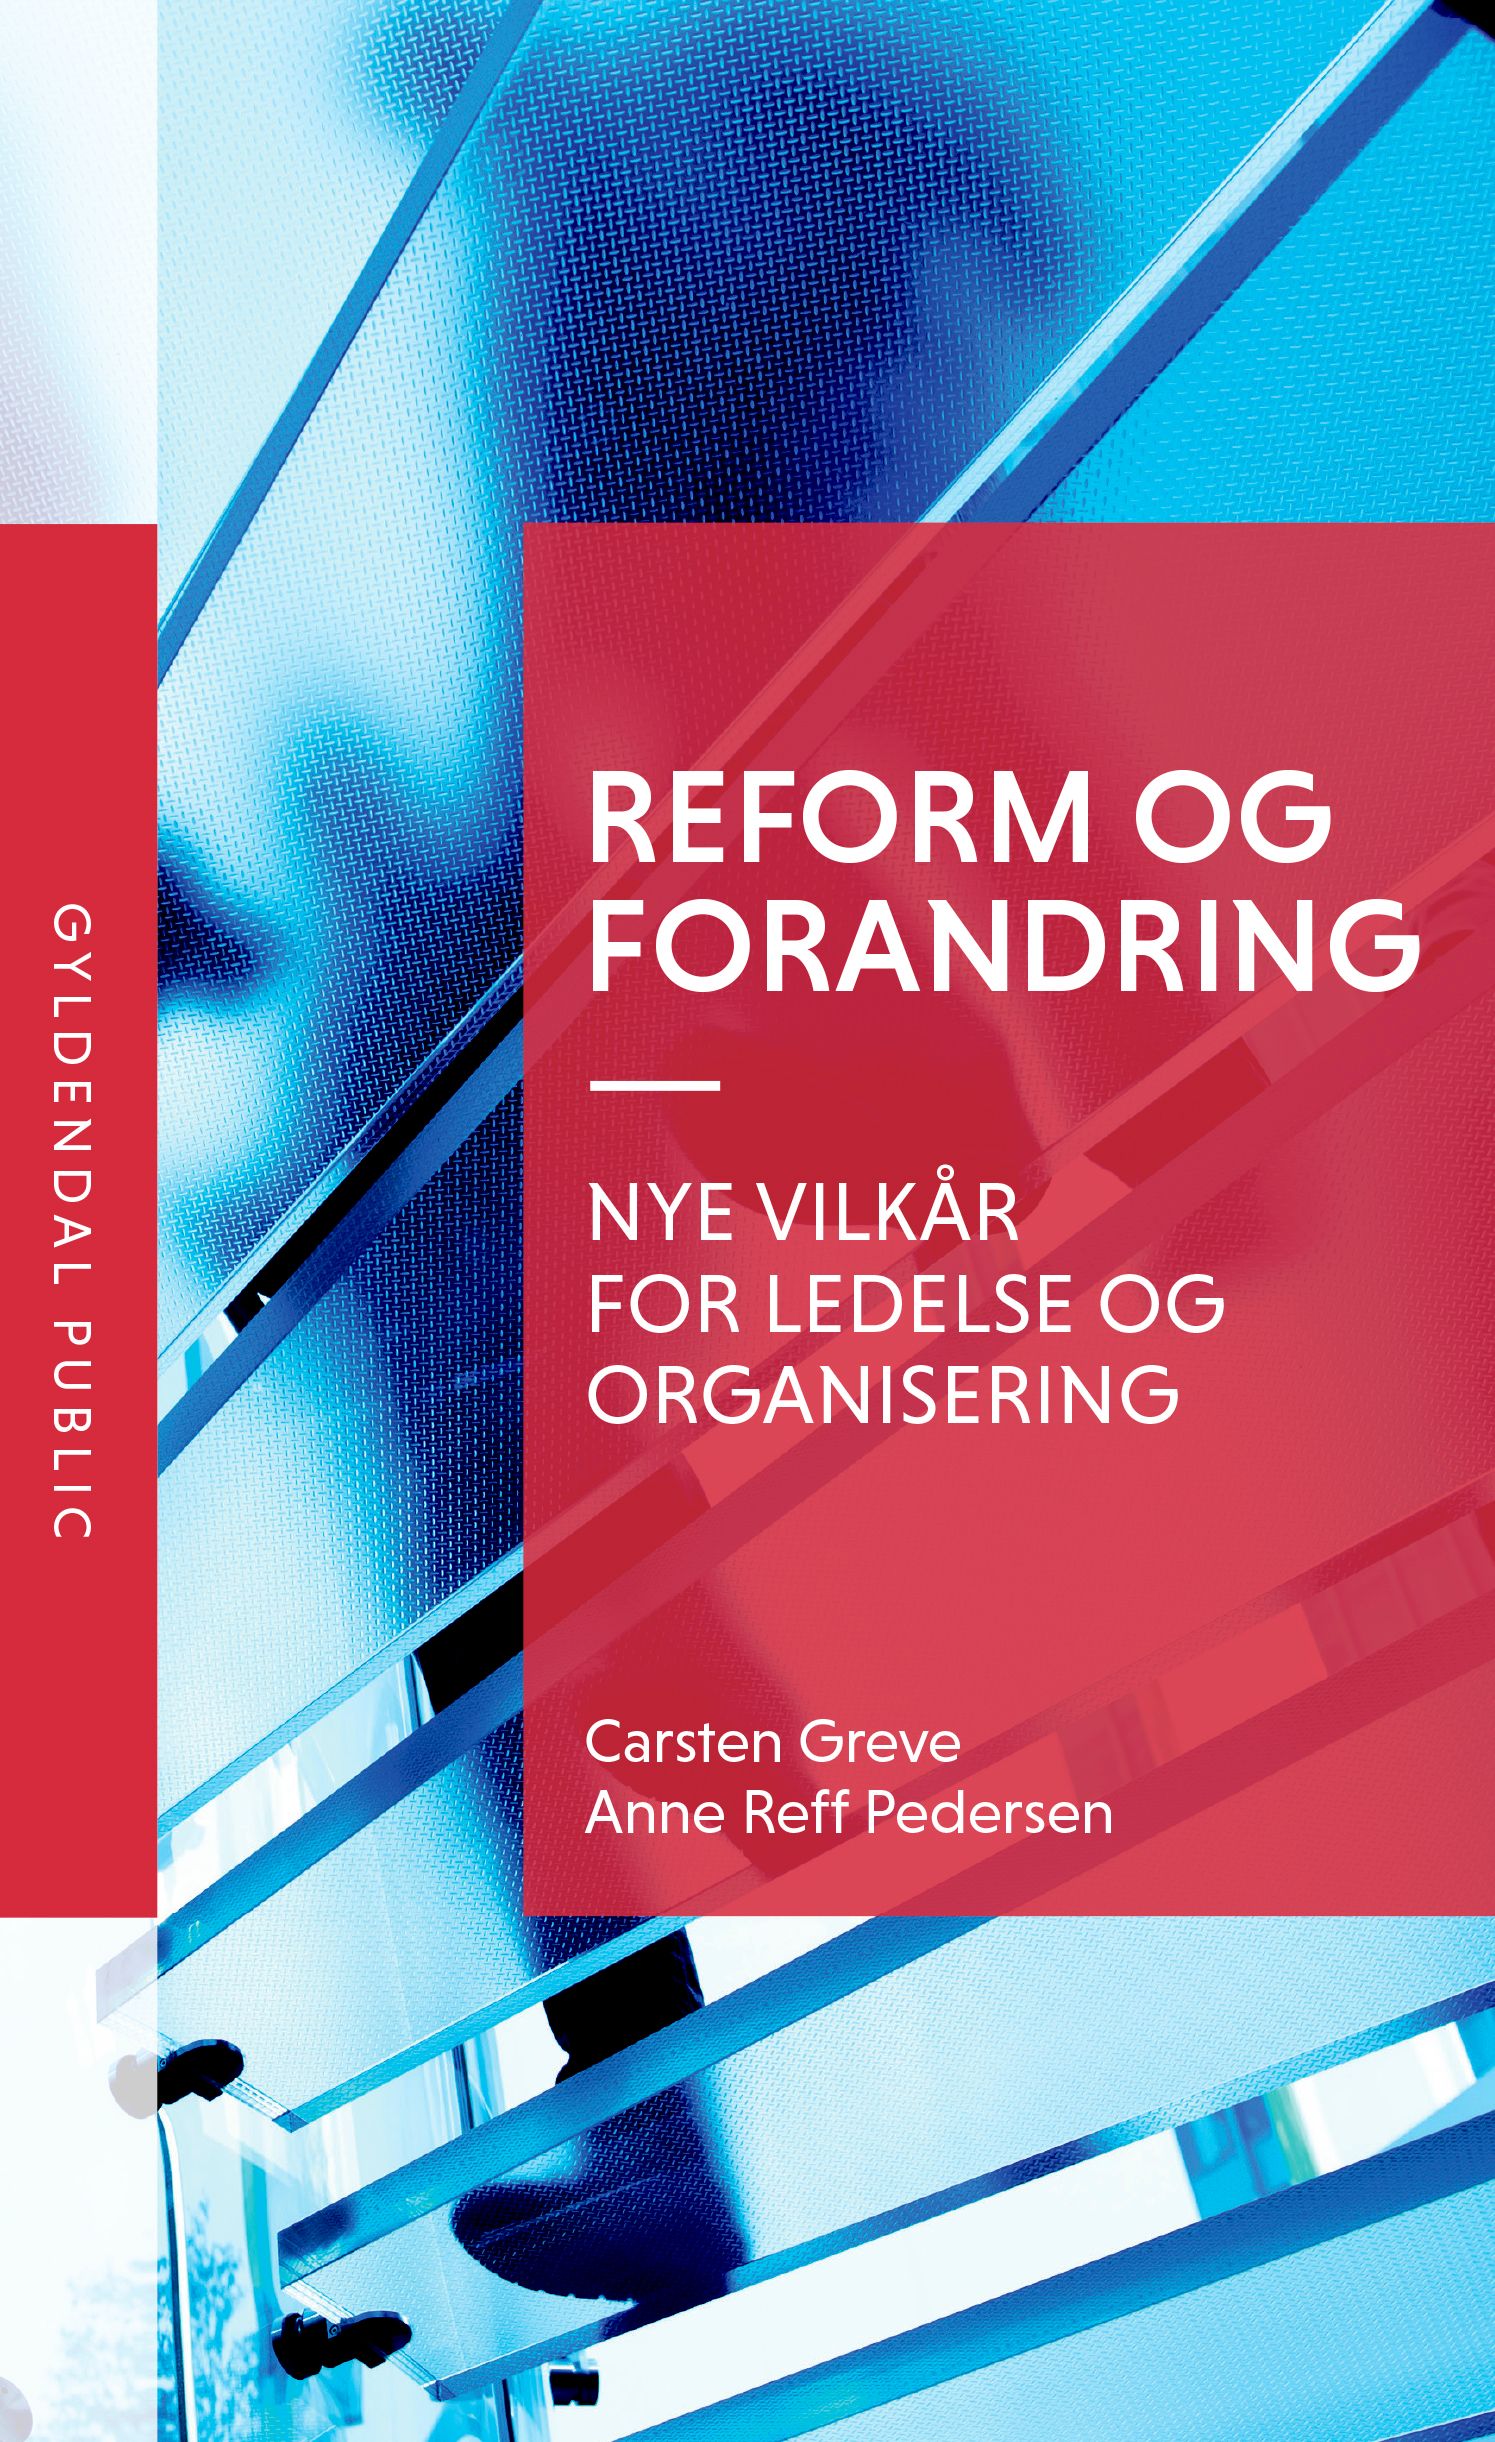 Reform og forandring, e-bok av Carsten Greve, Anne Reff Pedersen